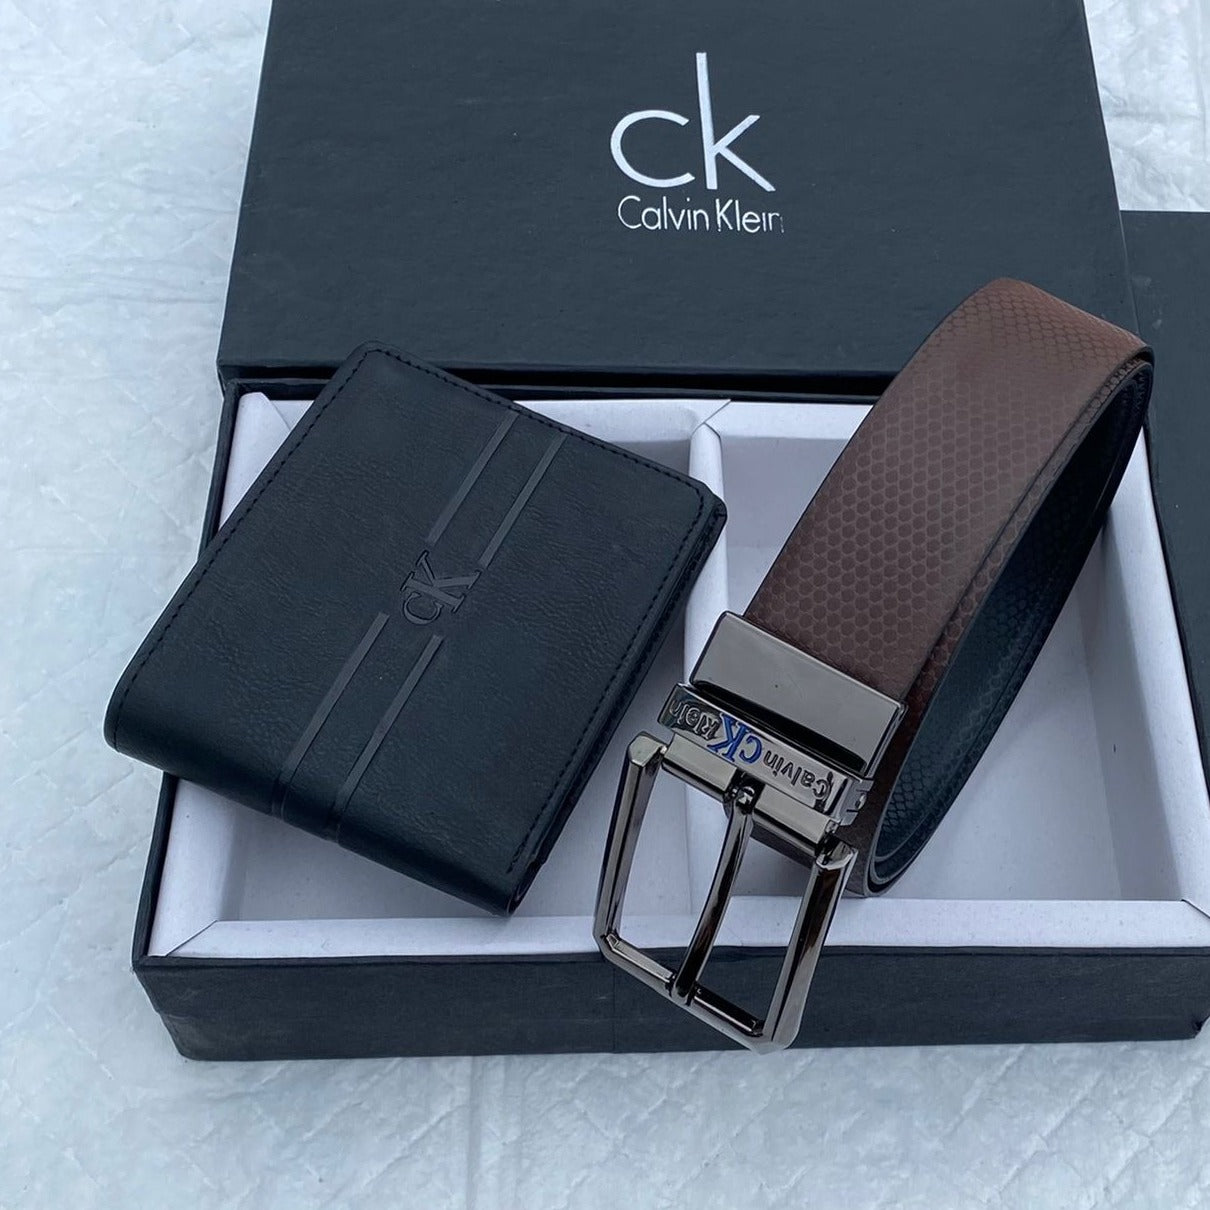 Amazing CK Wallet Belt Combo - AmazingBaba